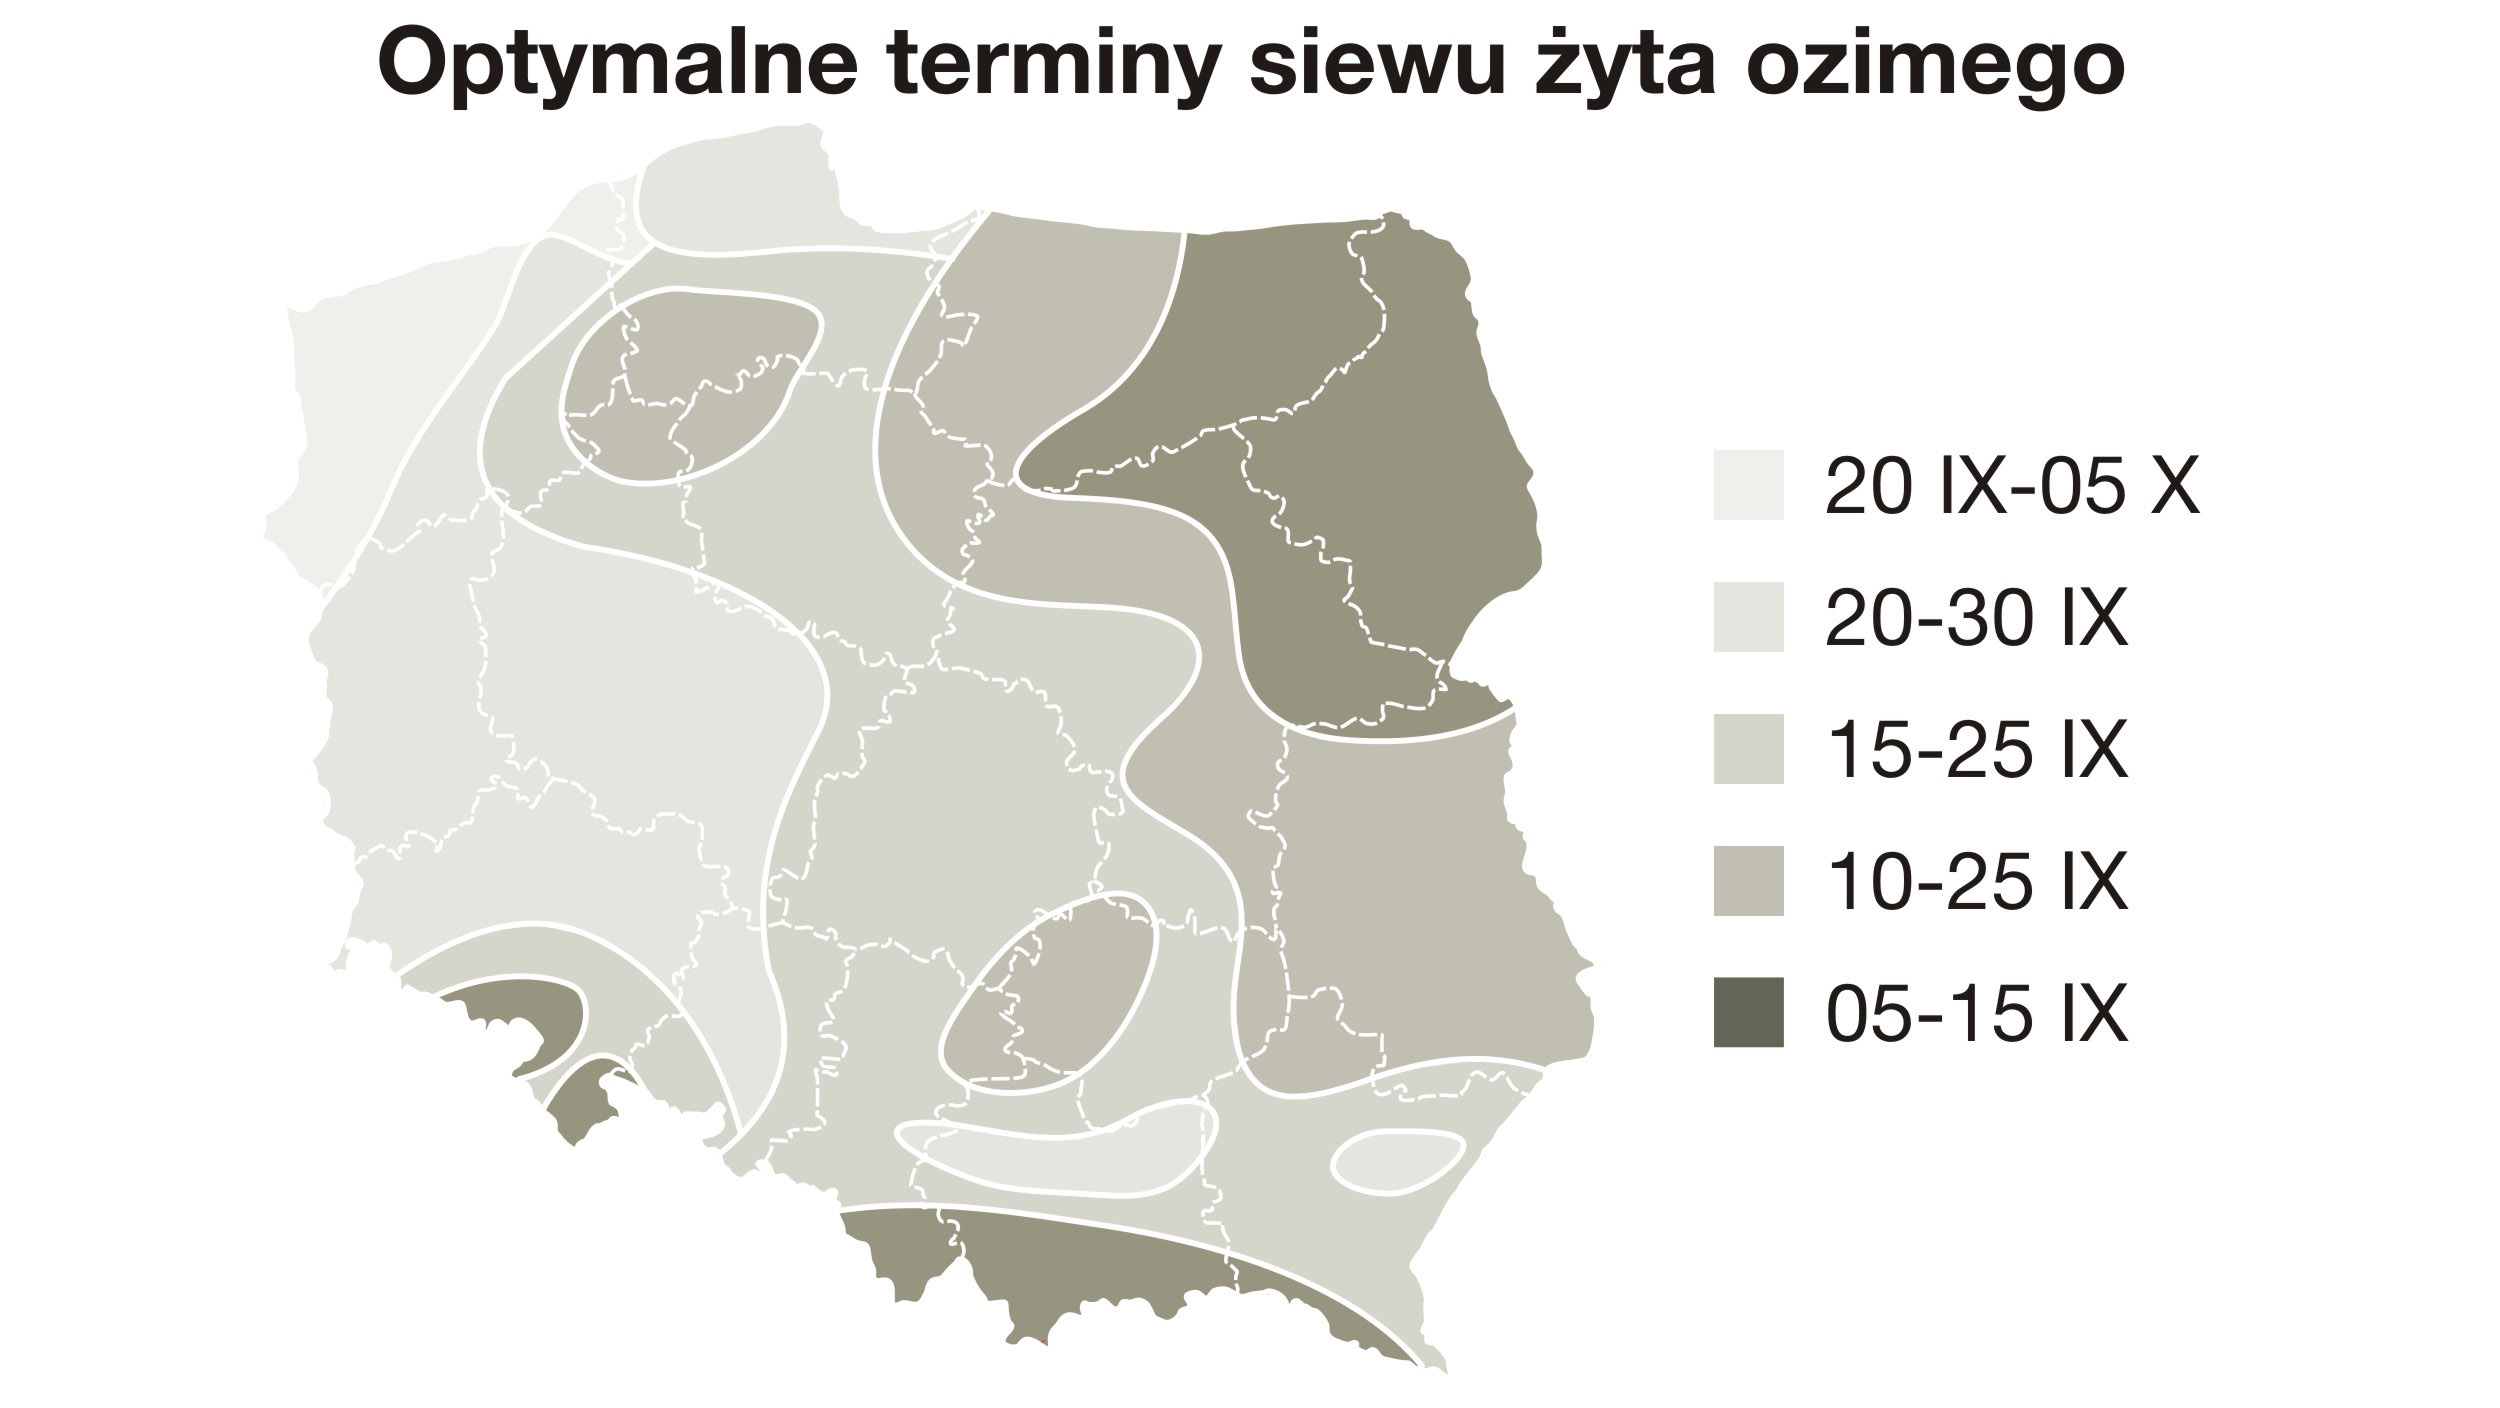 Termin siewu żyta ozimego w Polsce, według Instytut Uprawy Nawożenia i Gleboznastwa w Puławach